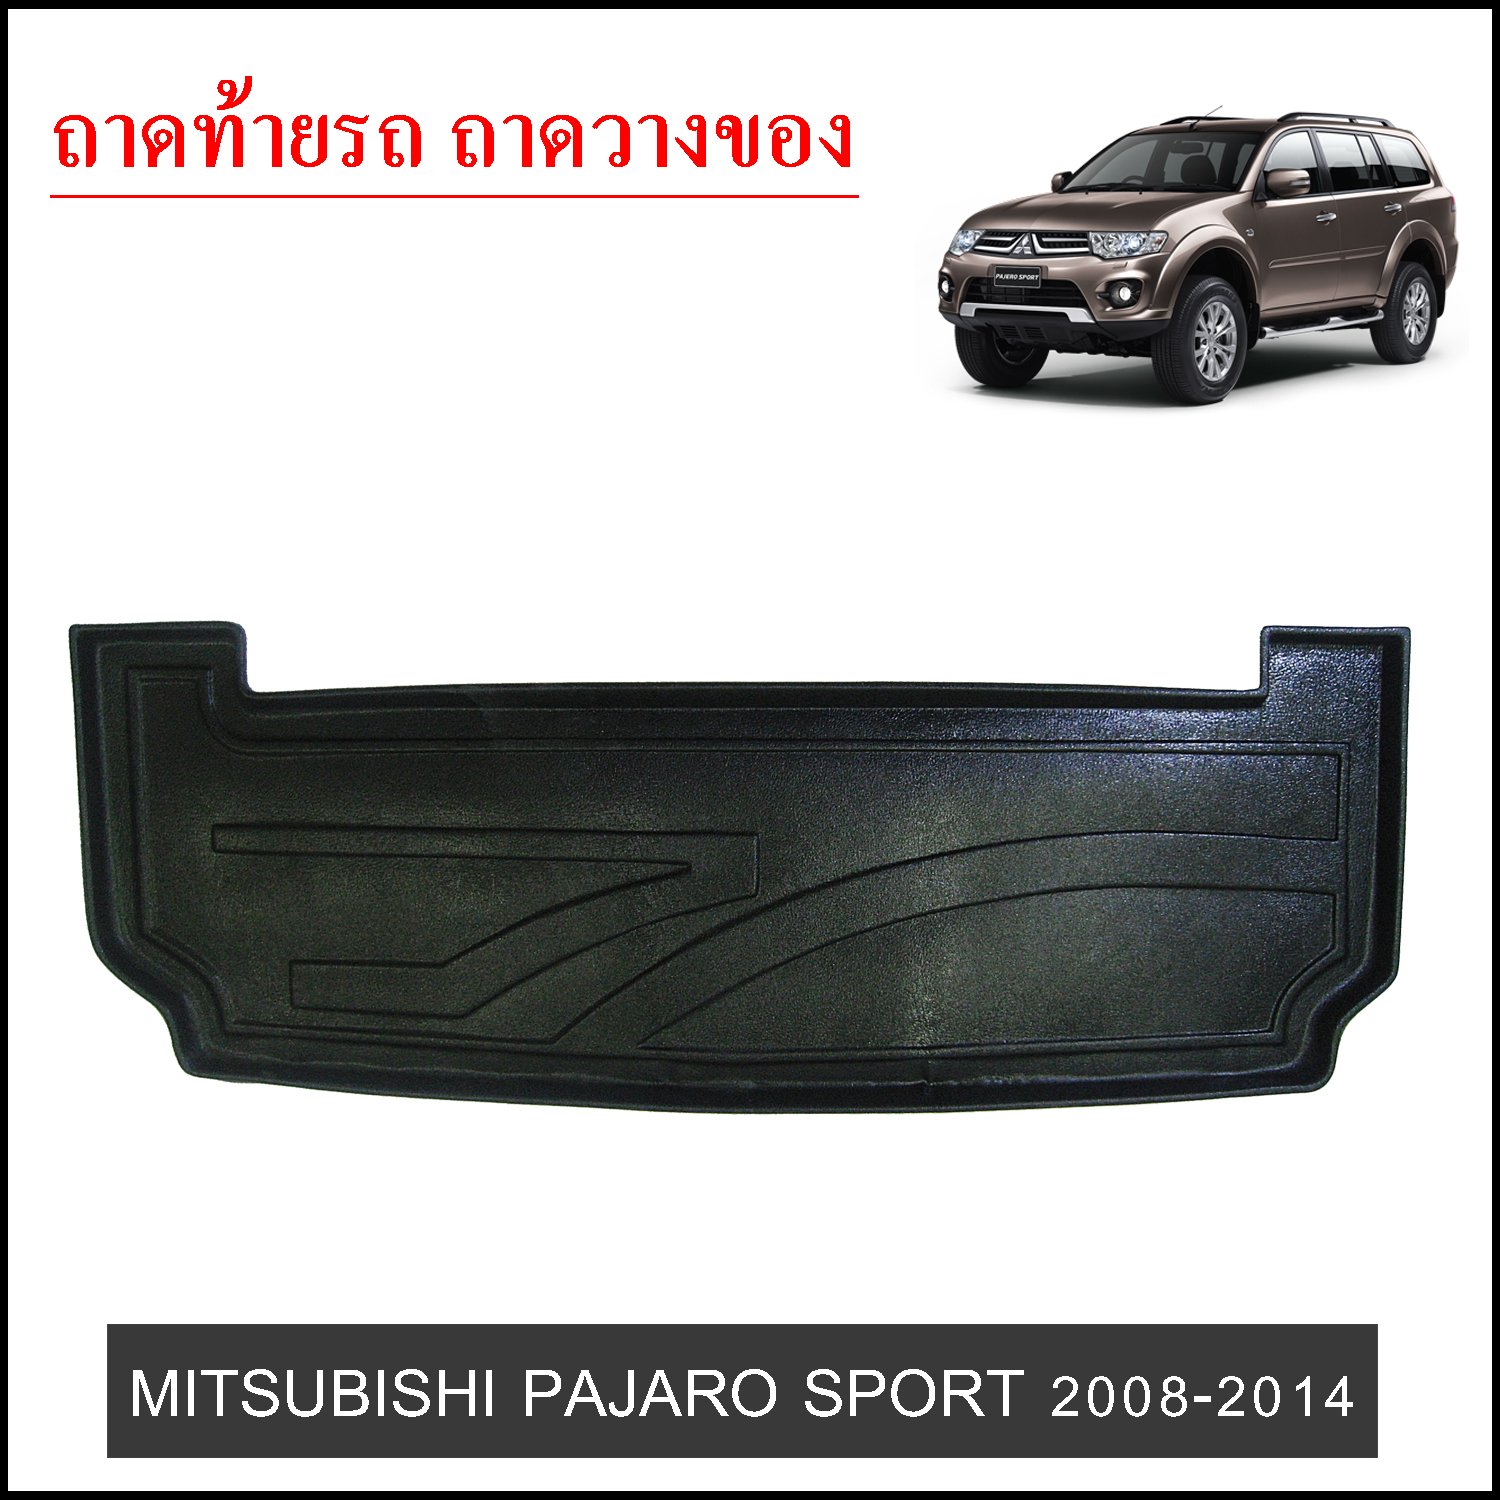 ถาดท้ายวางของ Mitsubishi Pajero Sport 2008-2014